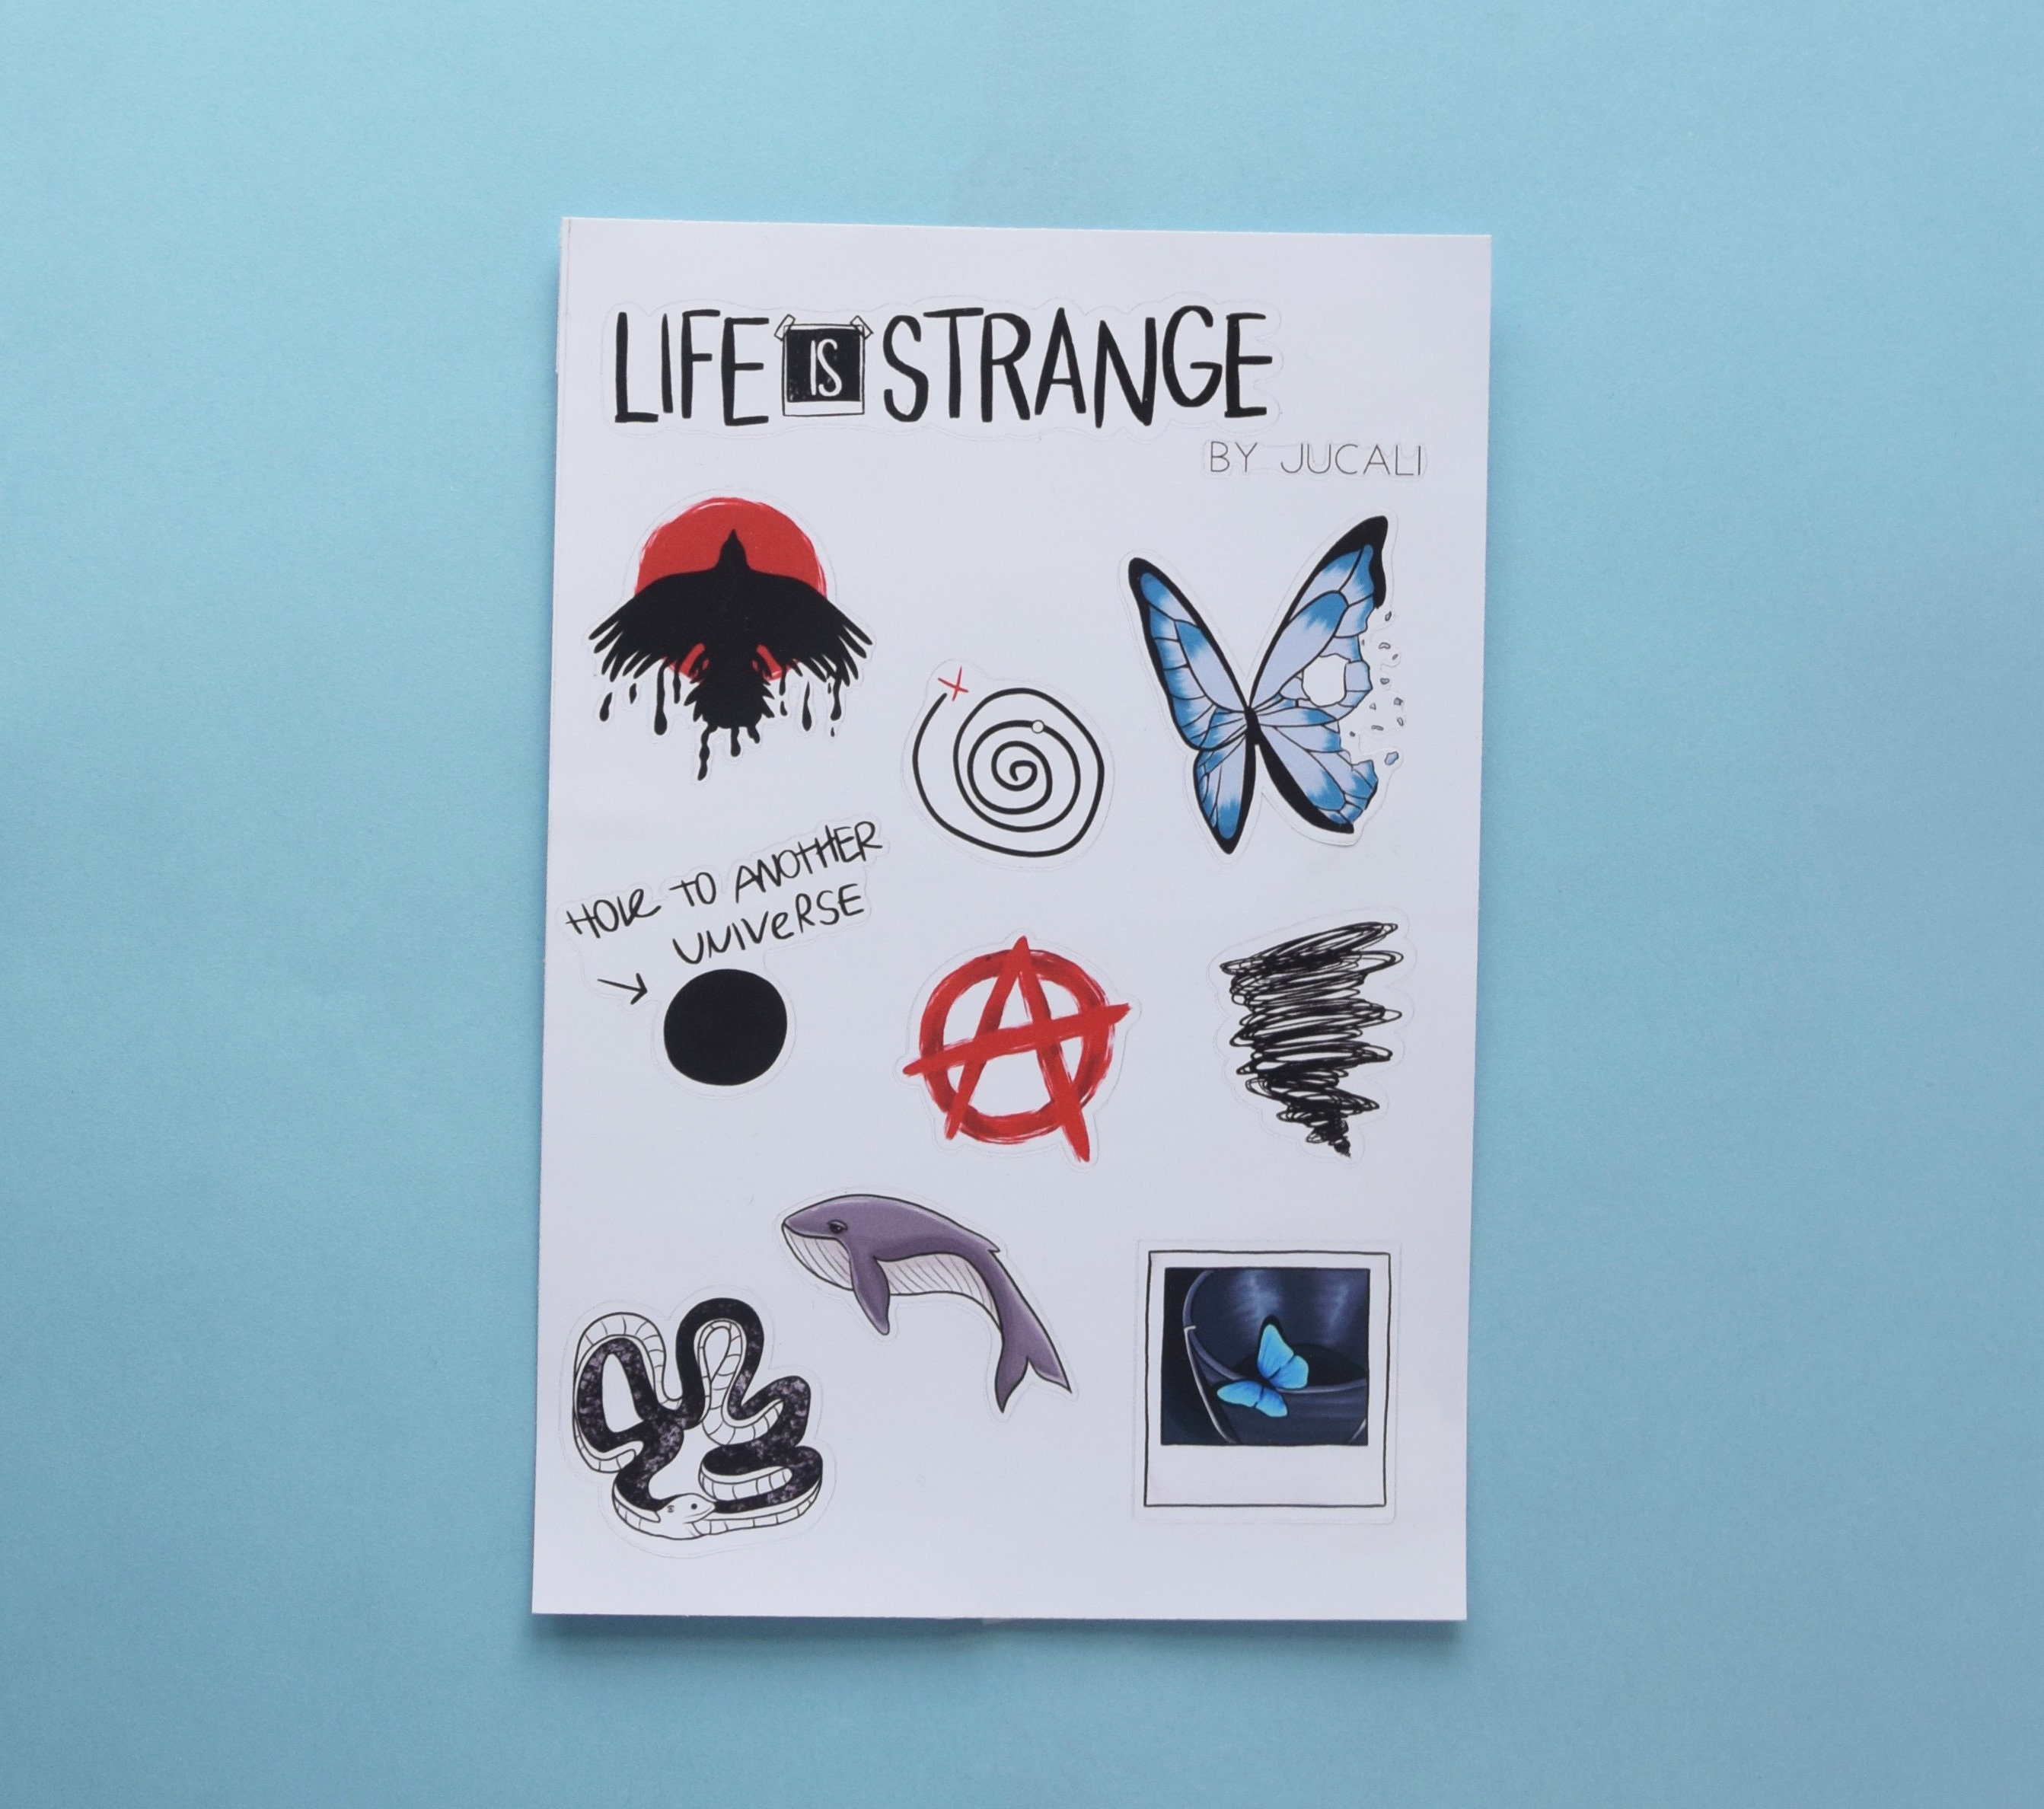 Life is strange stickers